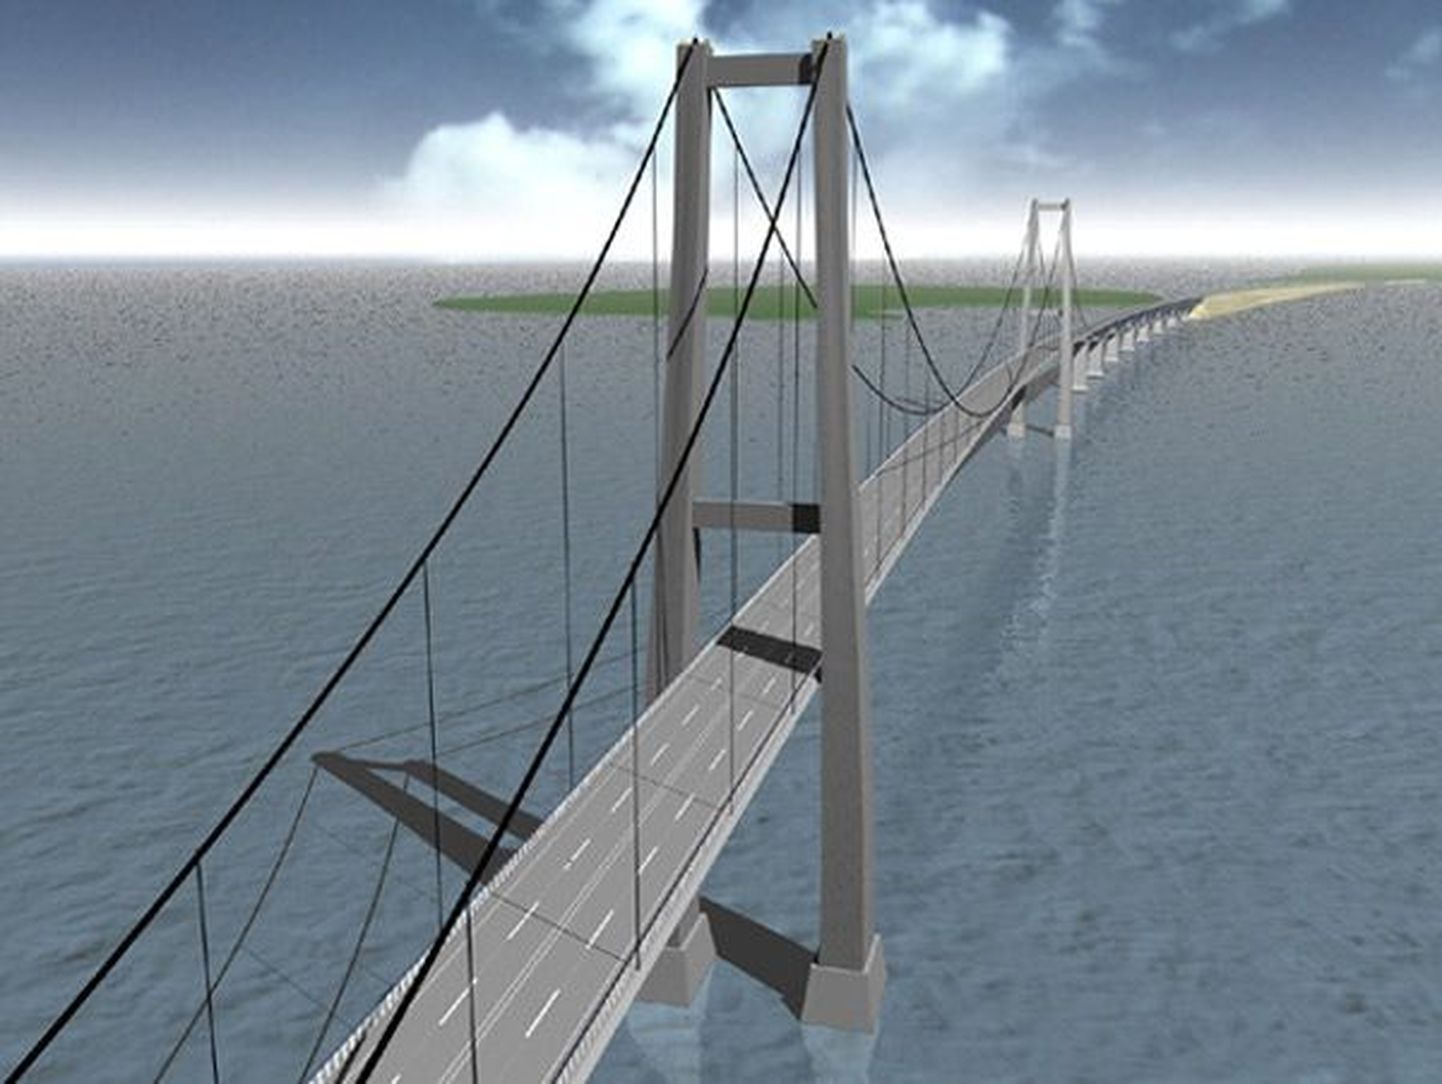 Üks võimalus, kuidas Väinamere sild välja võiks näha